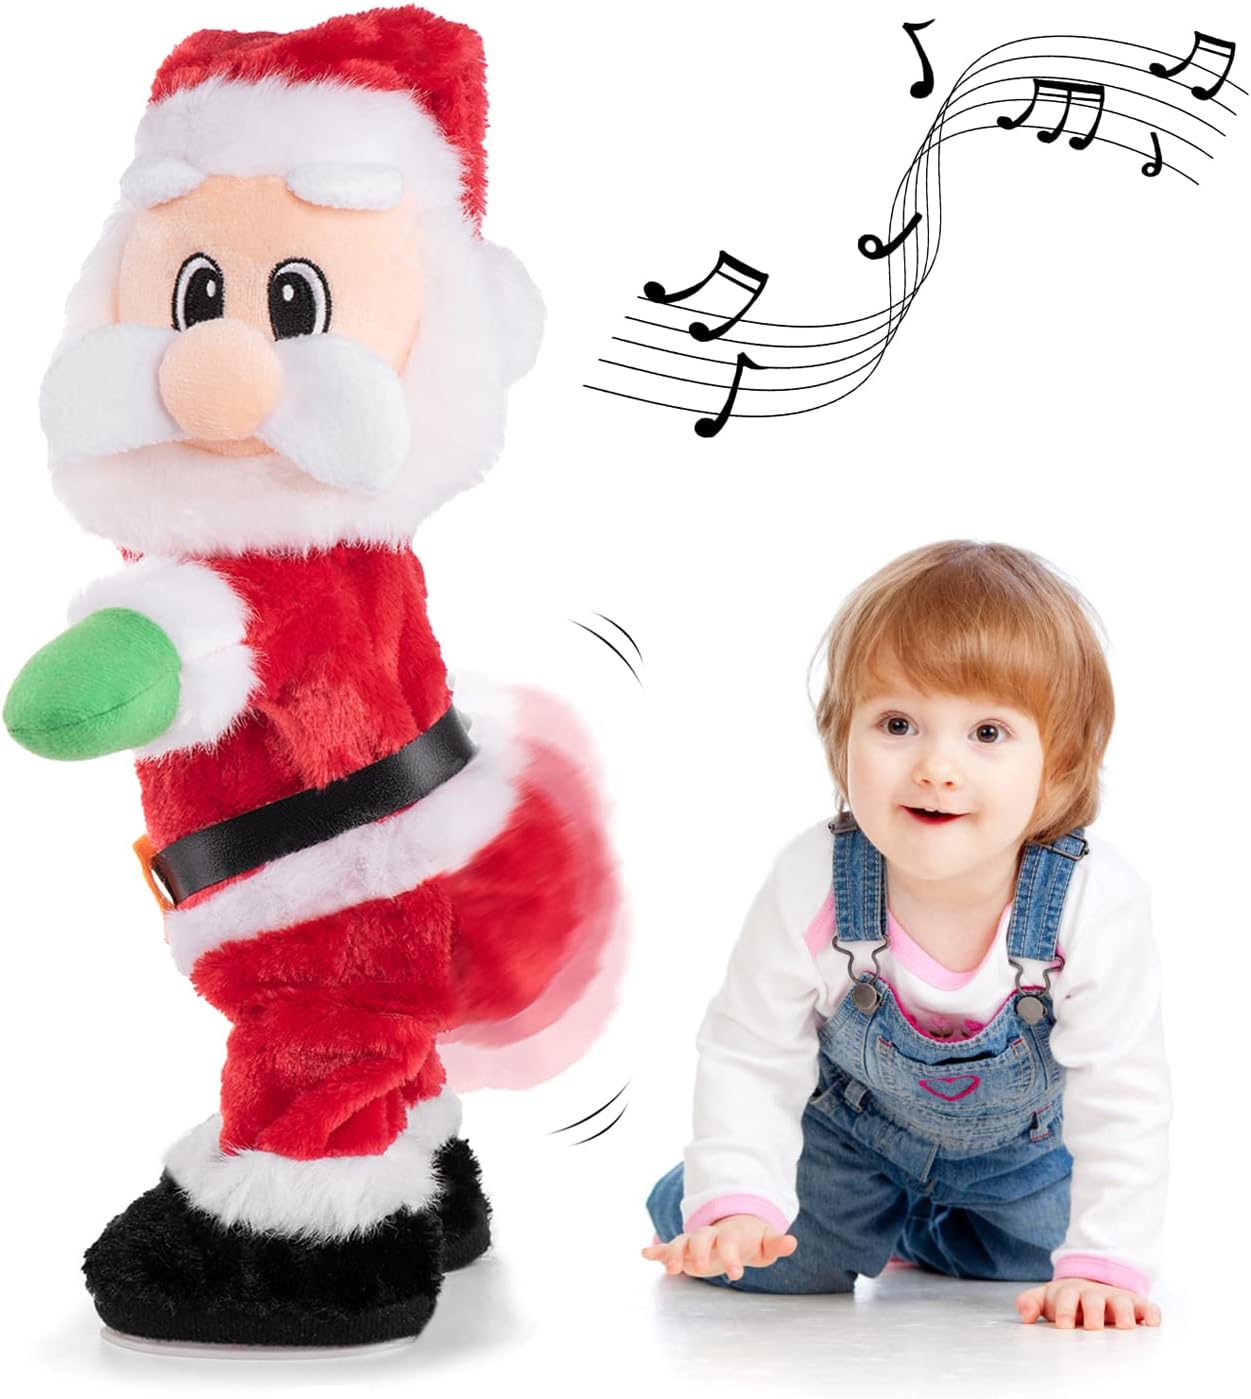 Santatwerk™ -Der Weihnachtsmann, der Stimmung macht!